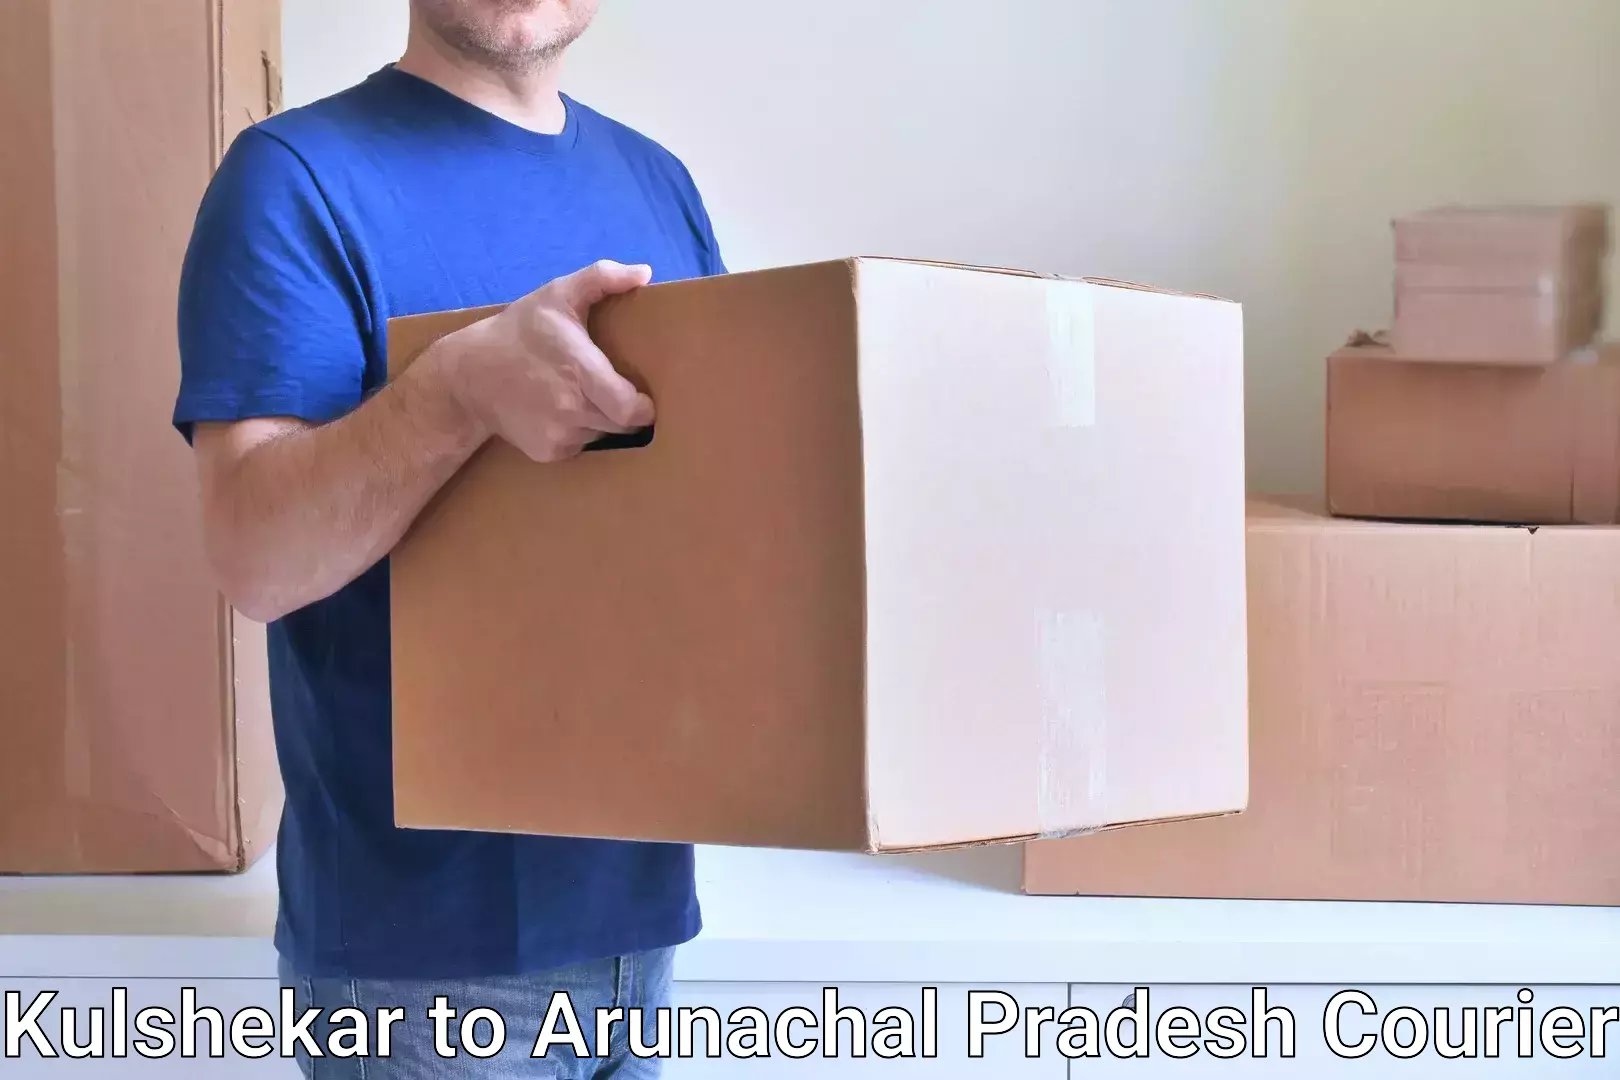 Comprehensive freight services Kulshekar to Arunachal Pradesh